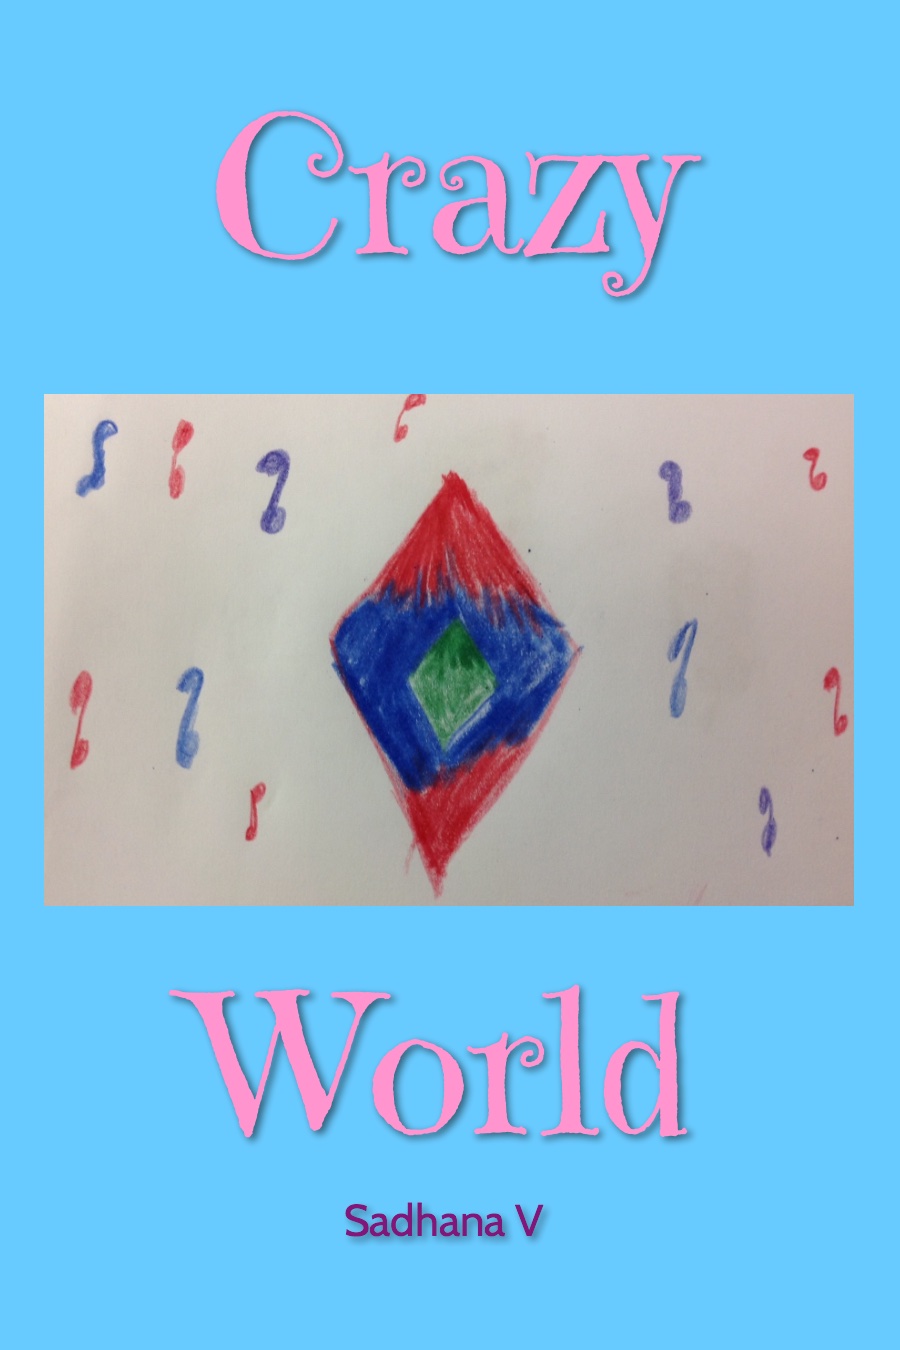 Crazy World by Sadhana V